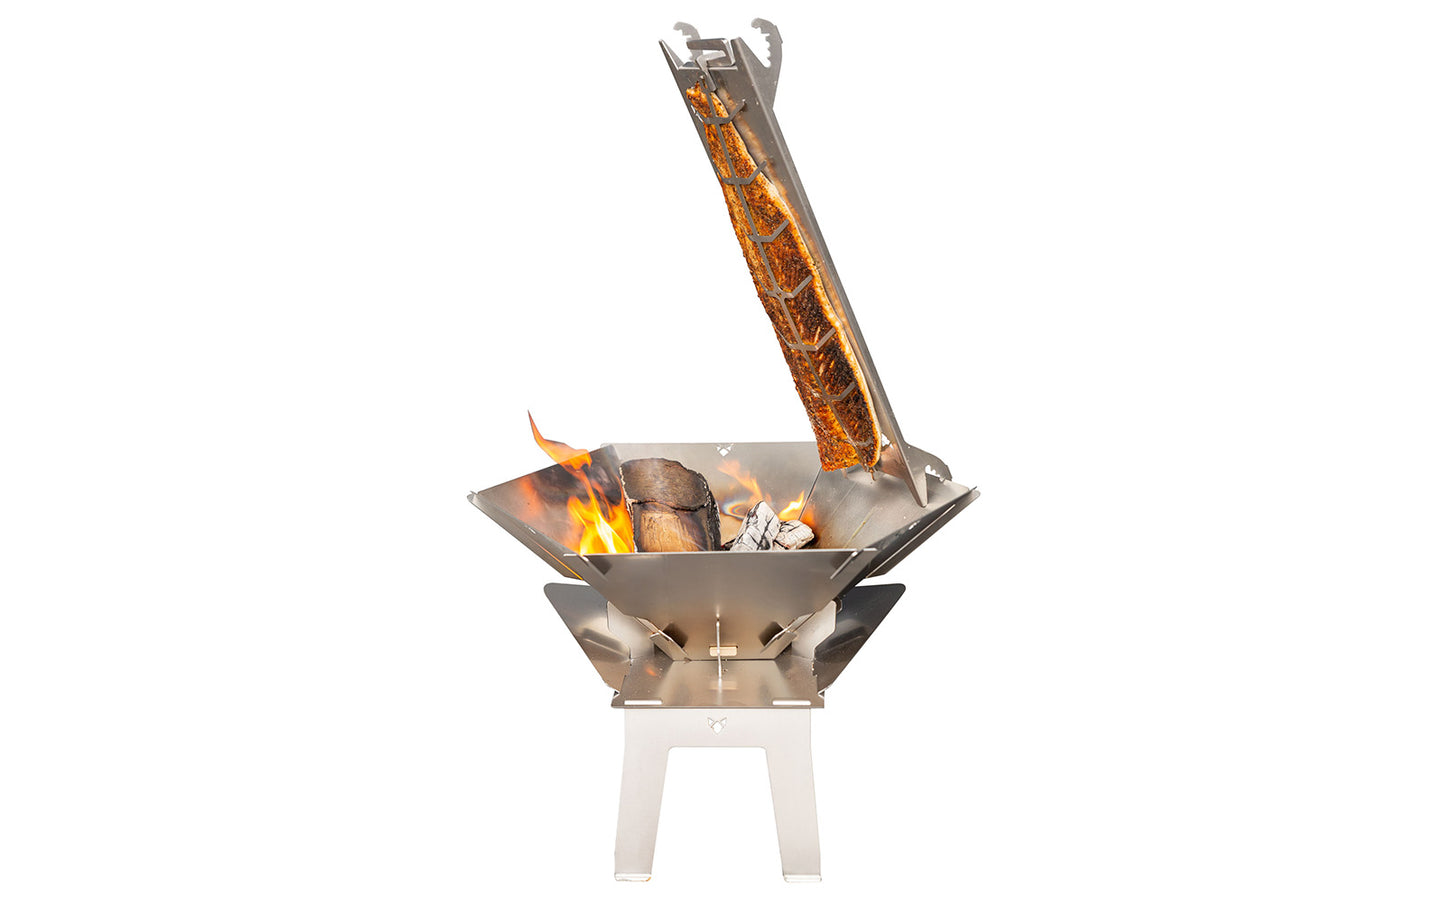 Edelstahl Flammlachshalter mit Lachs an einer mobilen Edelstahl-Feuerschale in der Feuer brennt und die auf einer Edelstahl-Erhöhung befestigt wurde vor weißem Hintergrund.